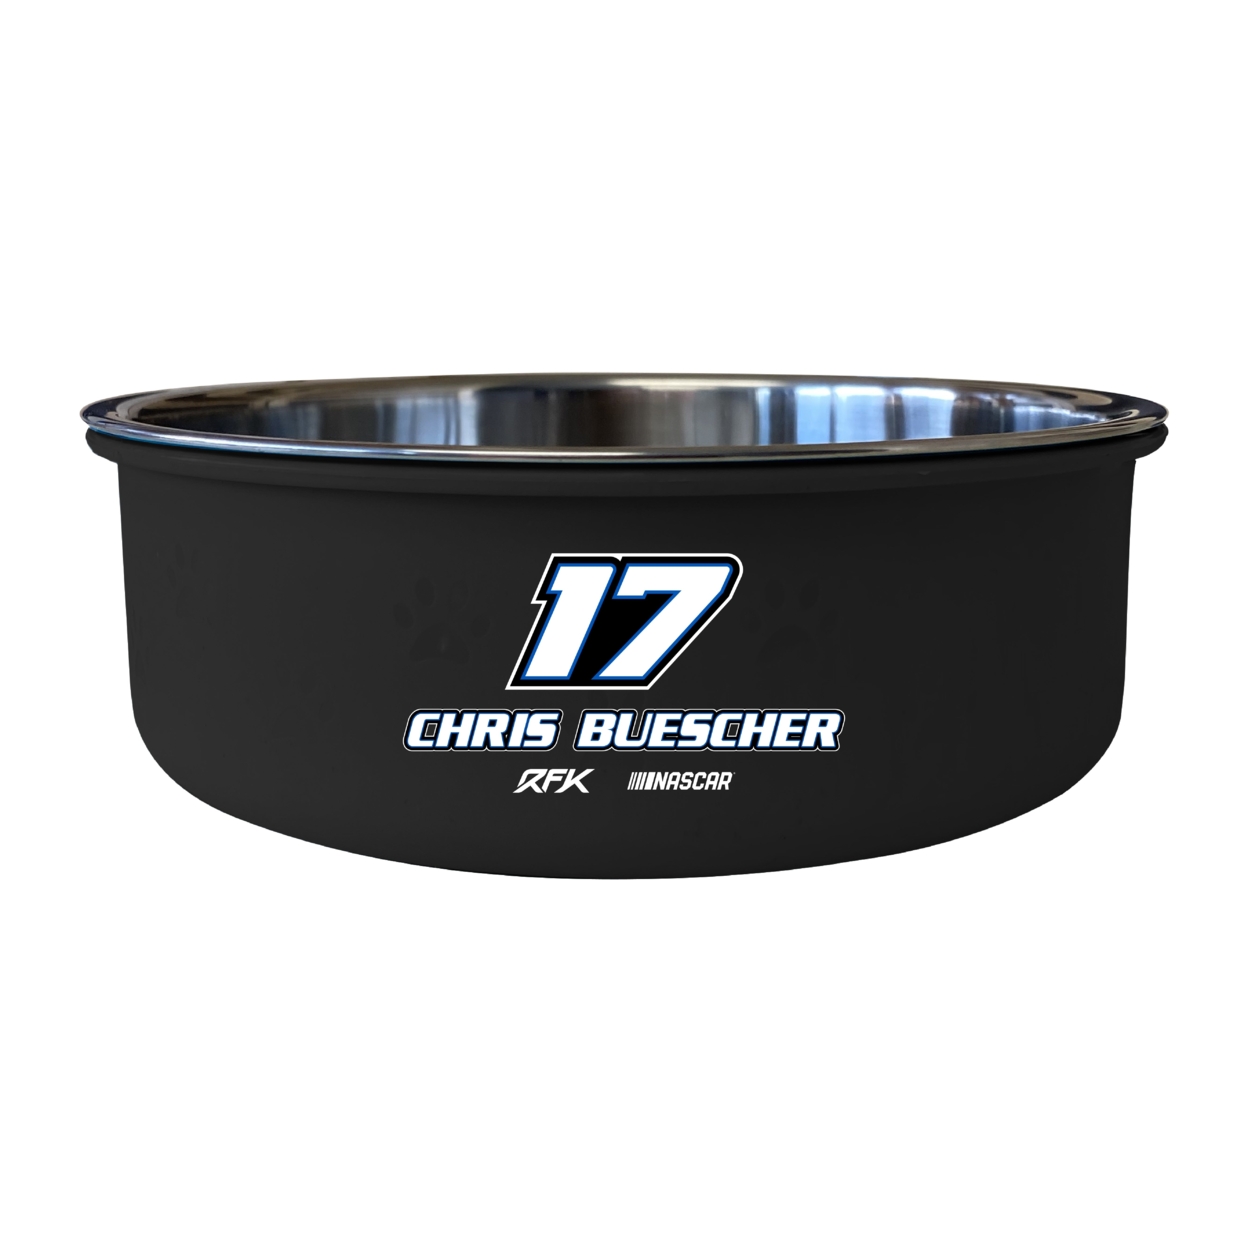 #17 Chris Buescher Officially Licensed 5x2.25 Pet Bowl